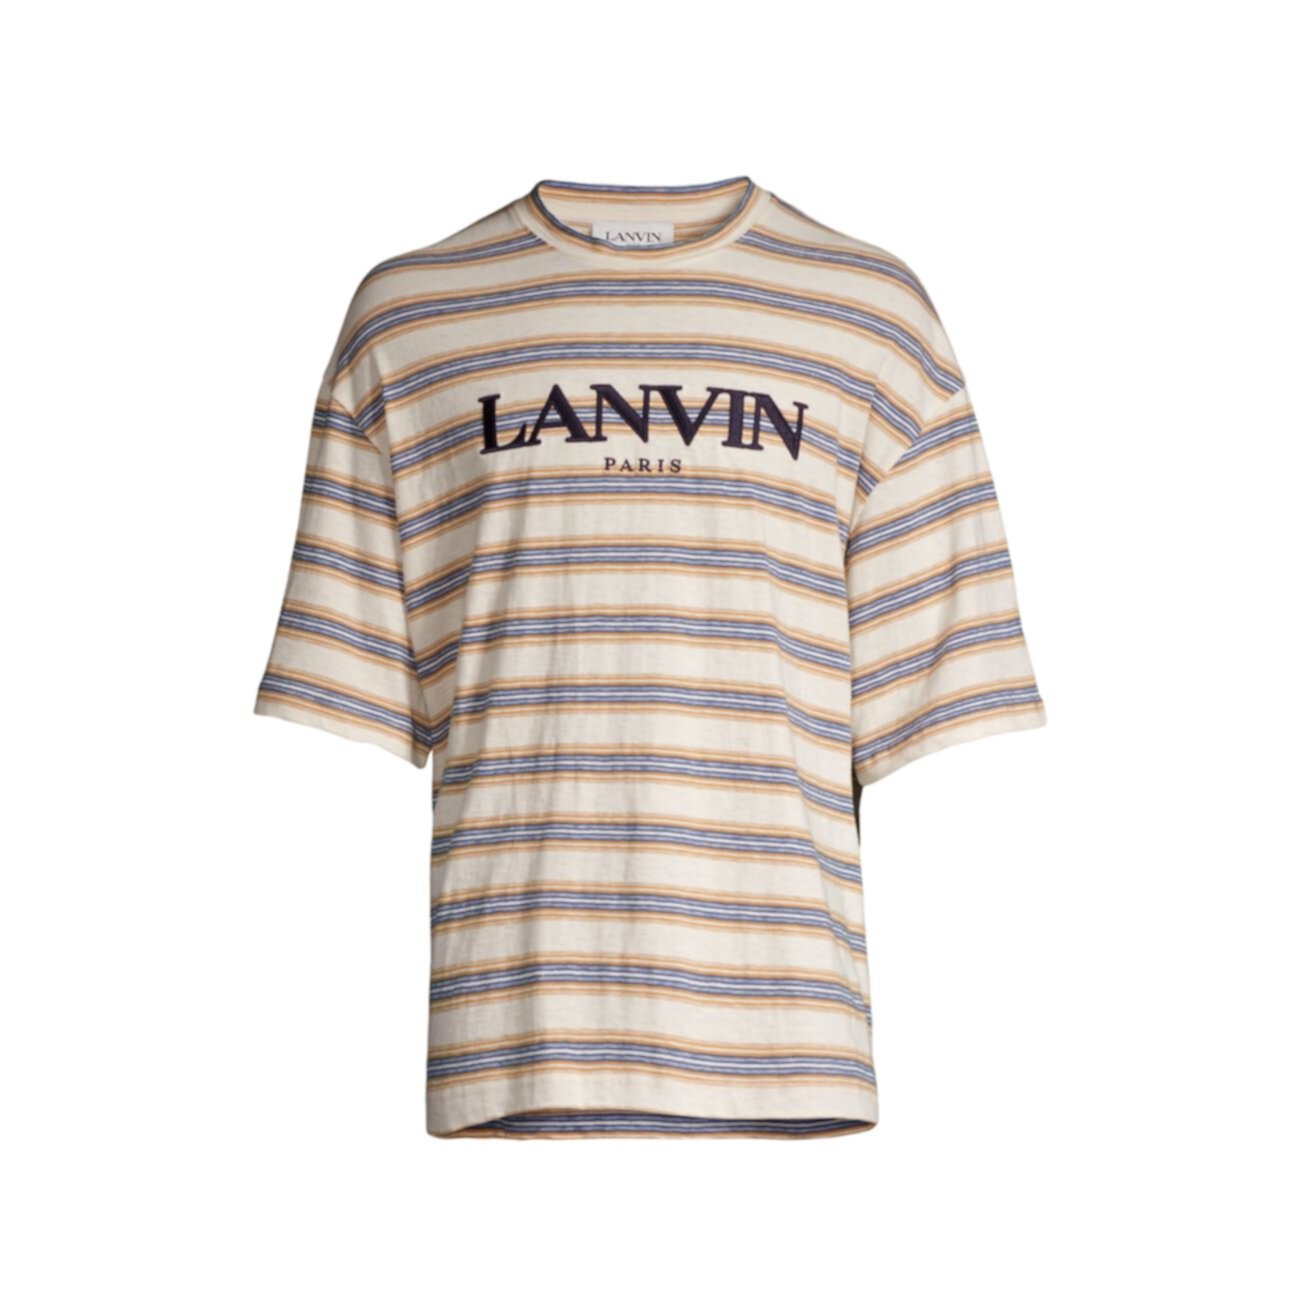 Полосатая футболка с вышитым логотипом Lanvin